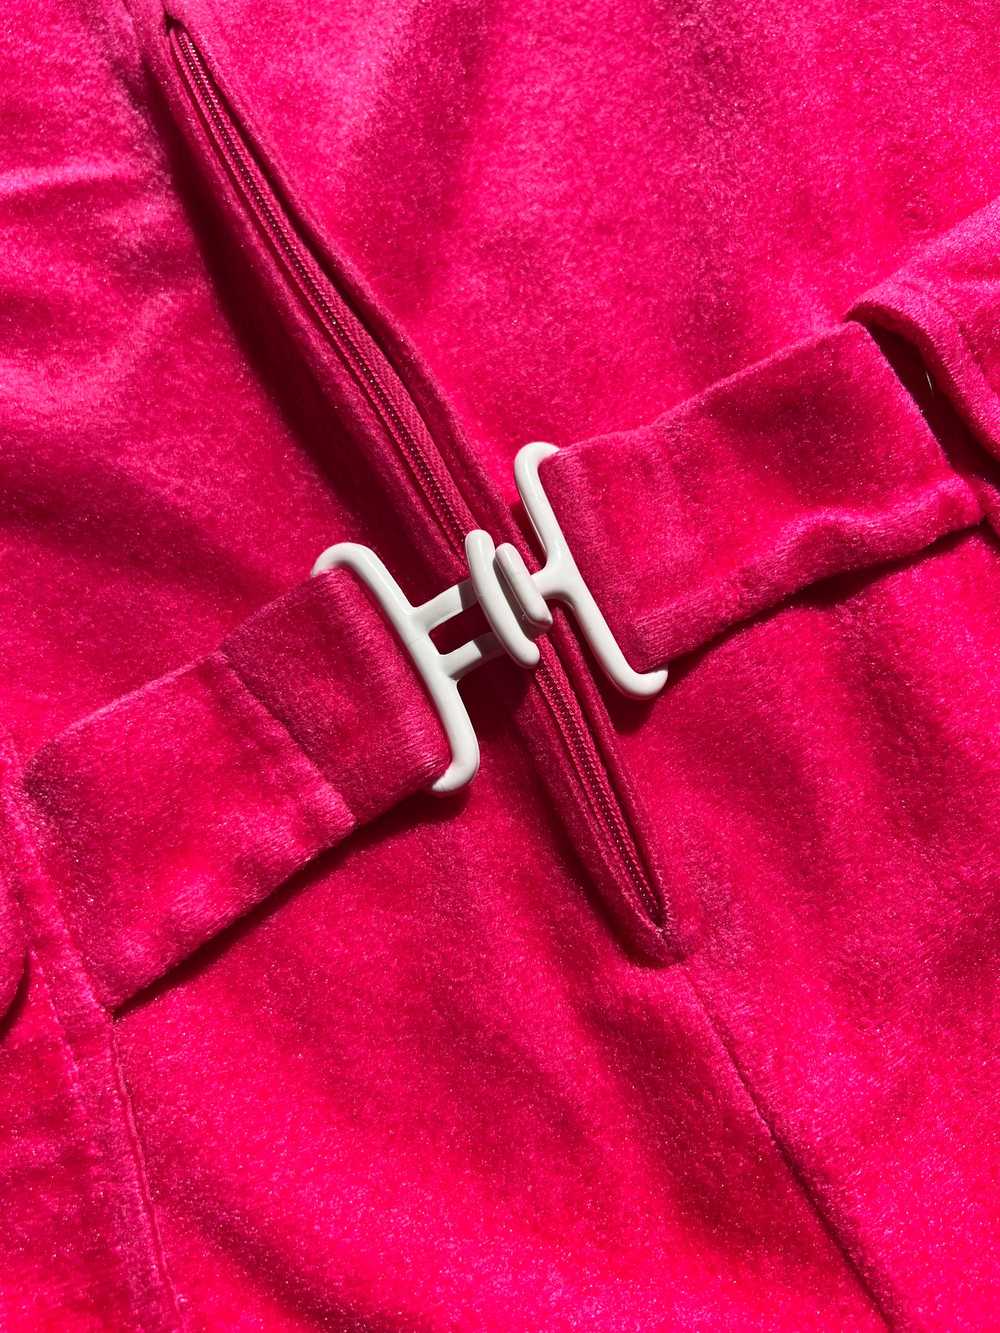 60’s Hot Pink Velveteen Zip Up Mod Romper - image 6